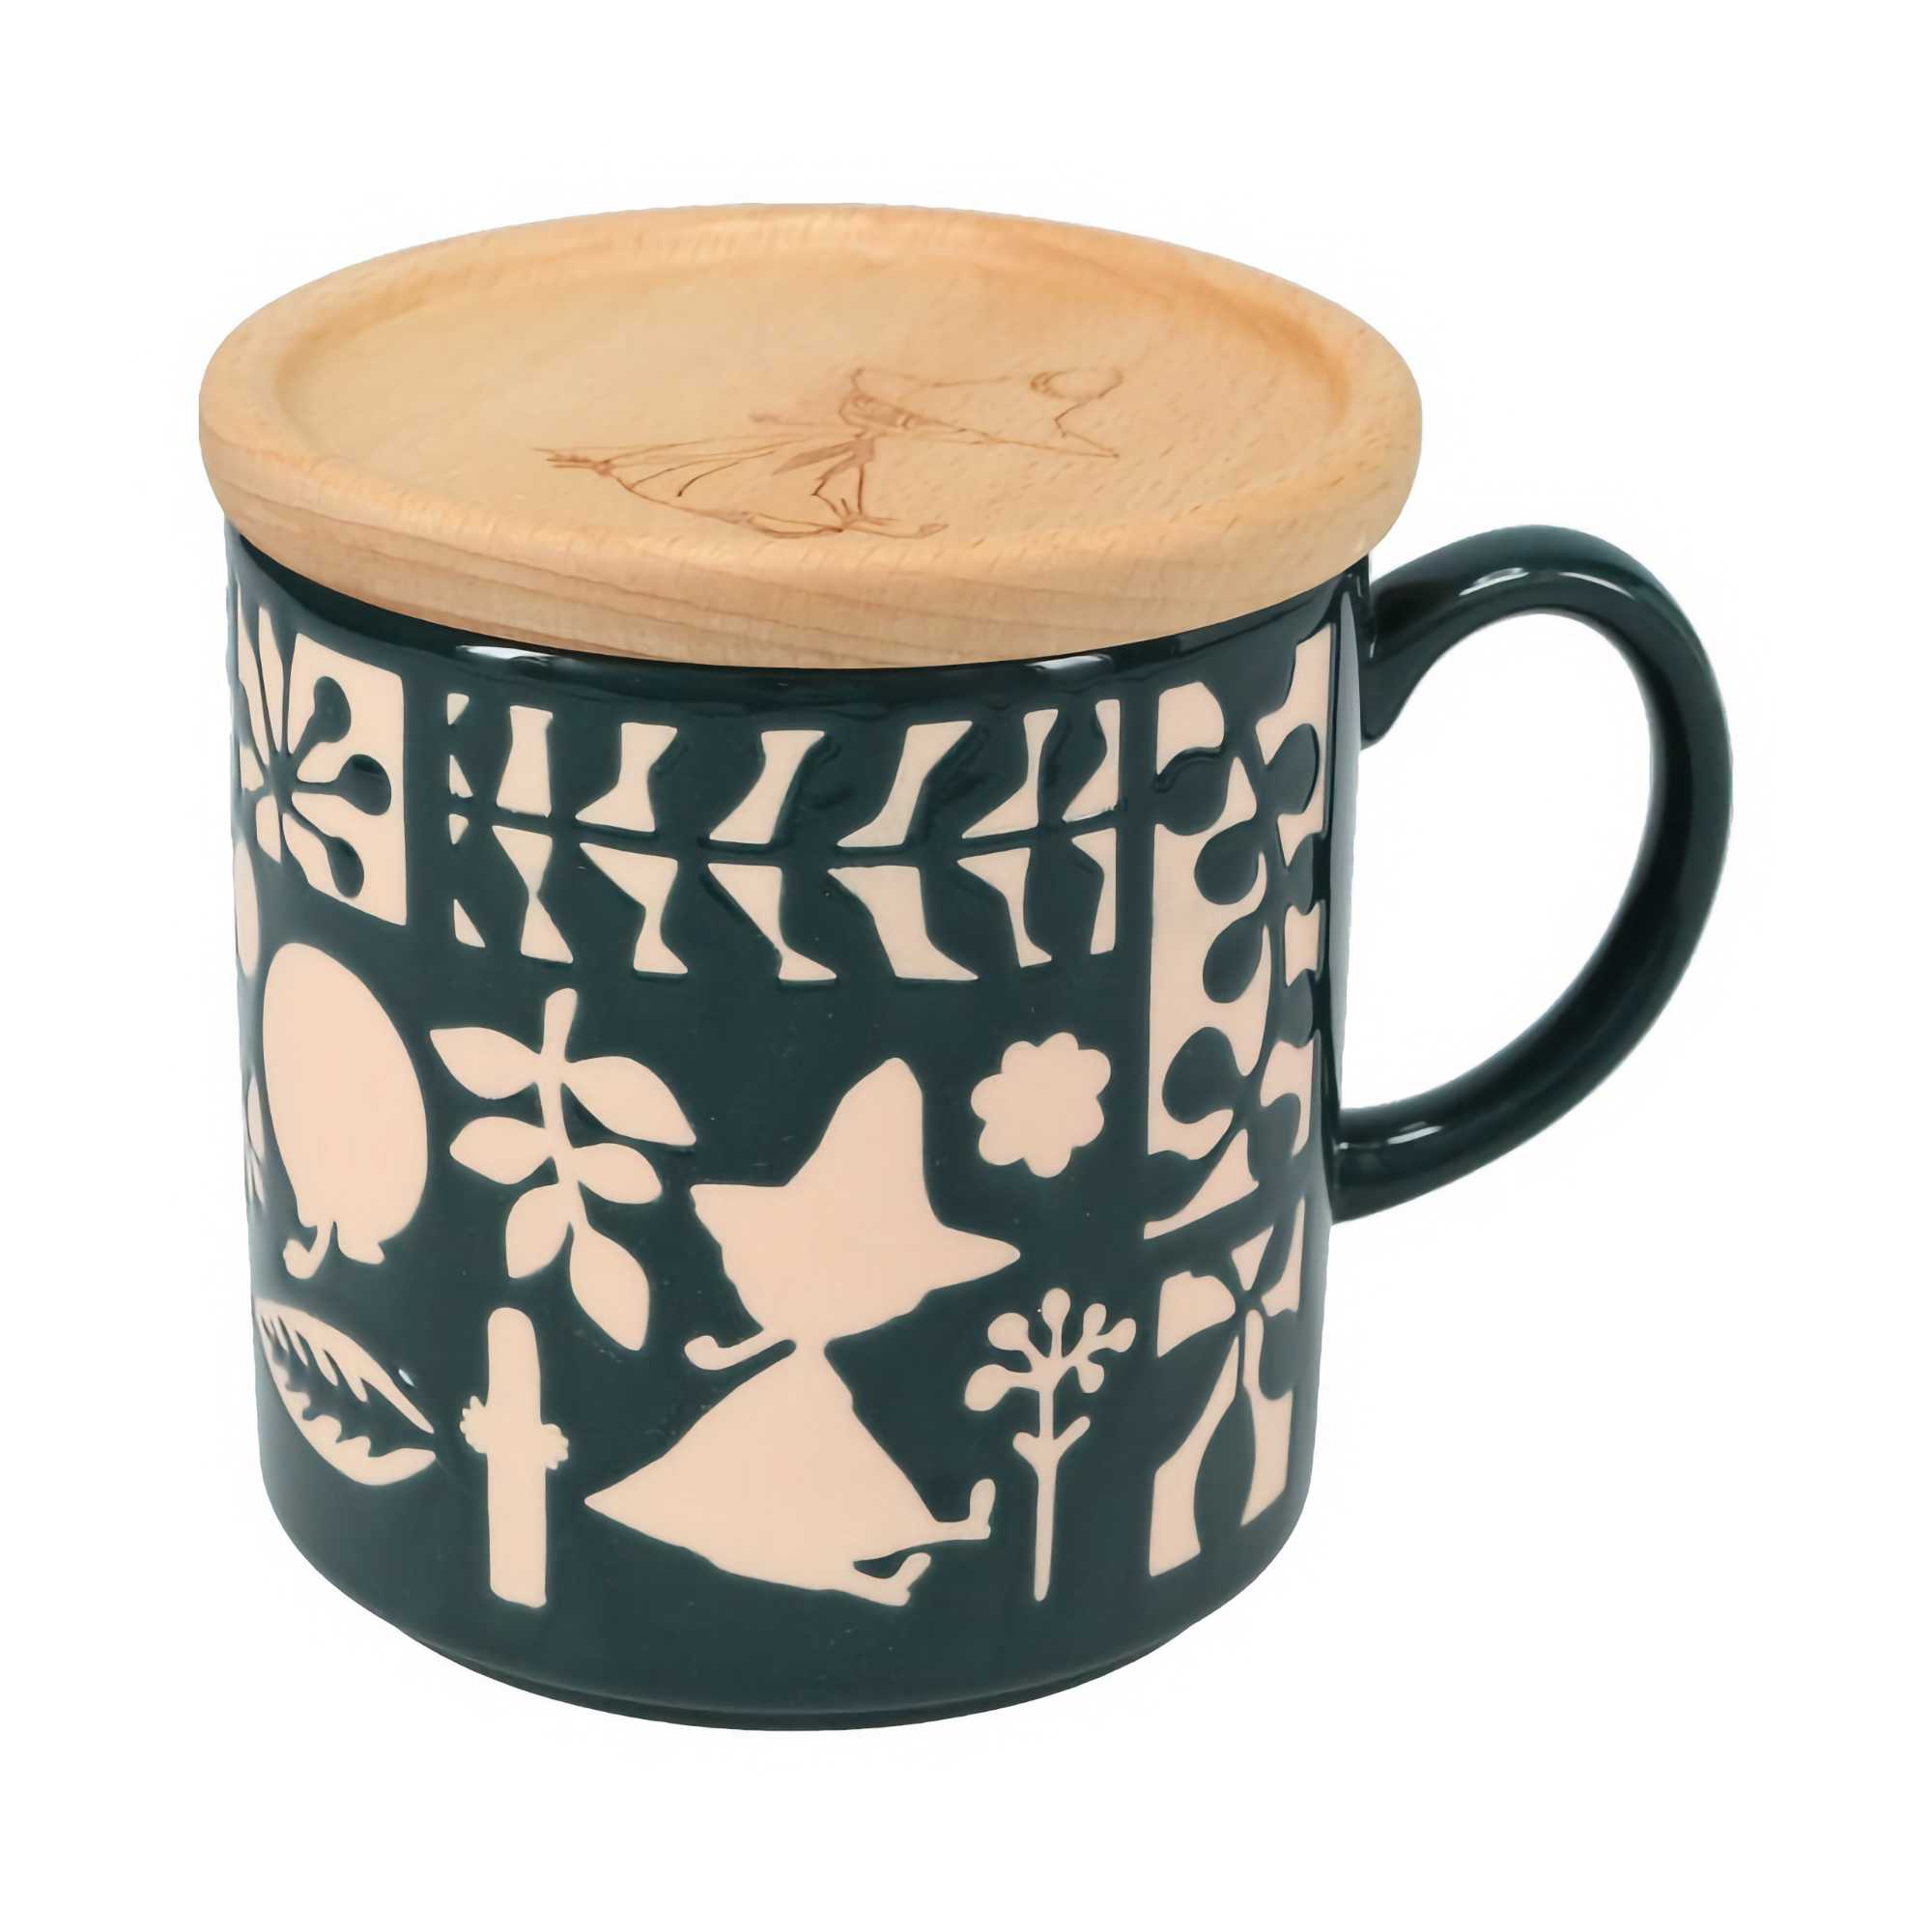 Moomin Mug with Wooden Coaster, Black